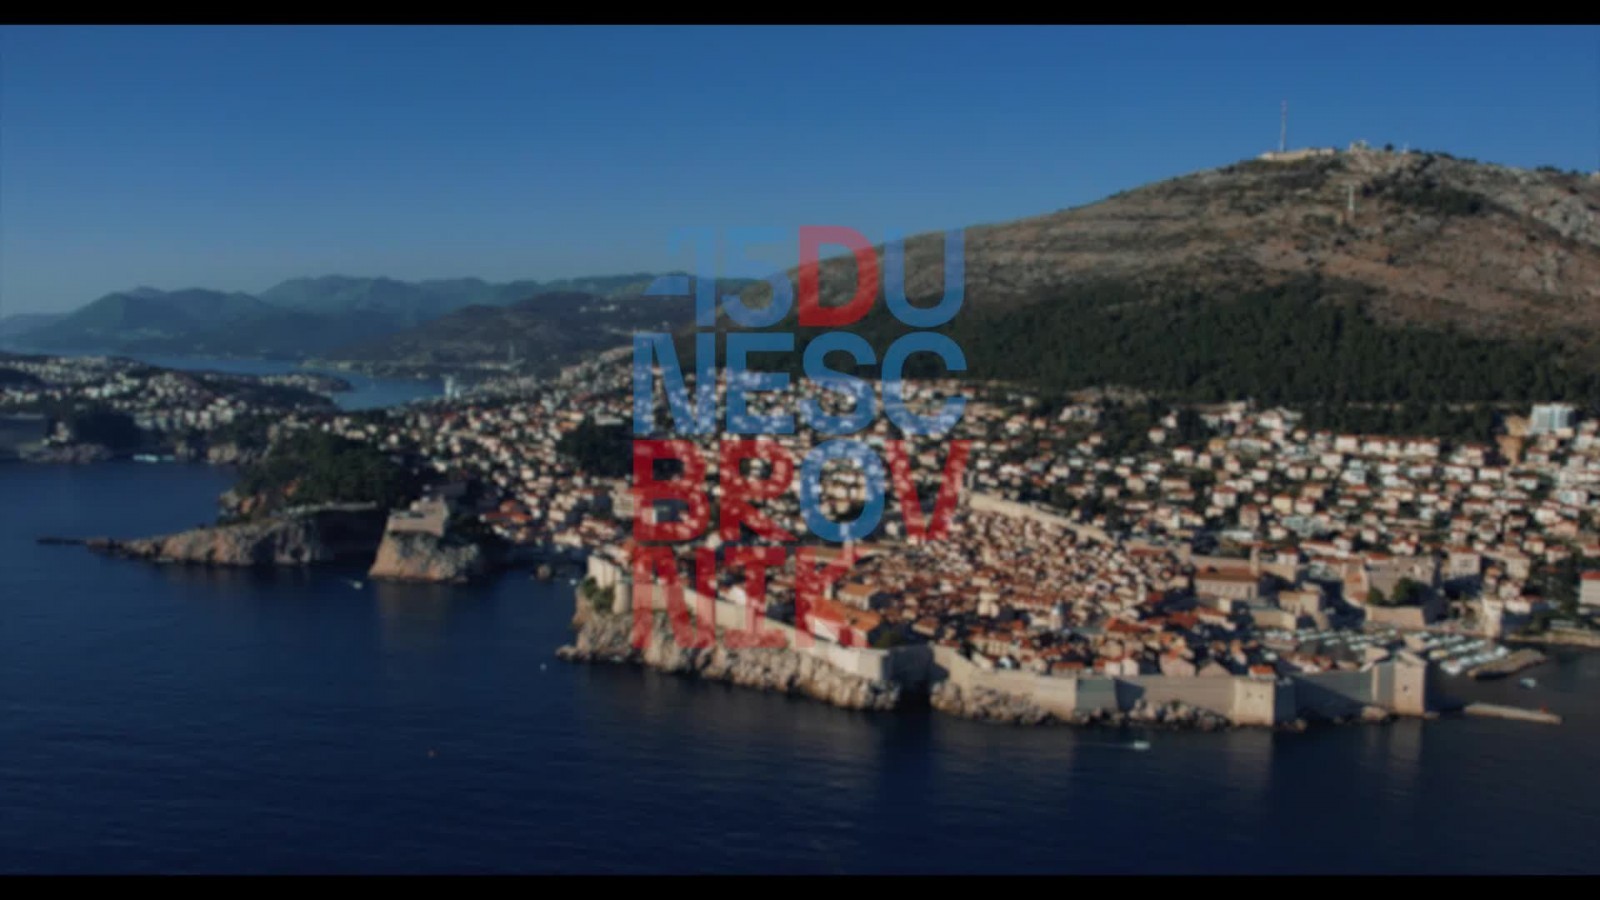 Preko tisuću događanja kroz cijelu godinu: Pogledajte program Godine UNESCO-ove svjetske baštine u Dubrovniku